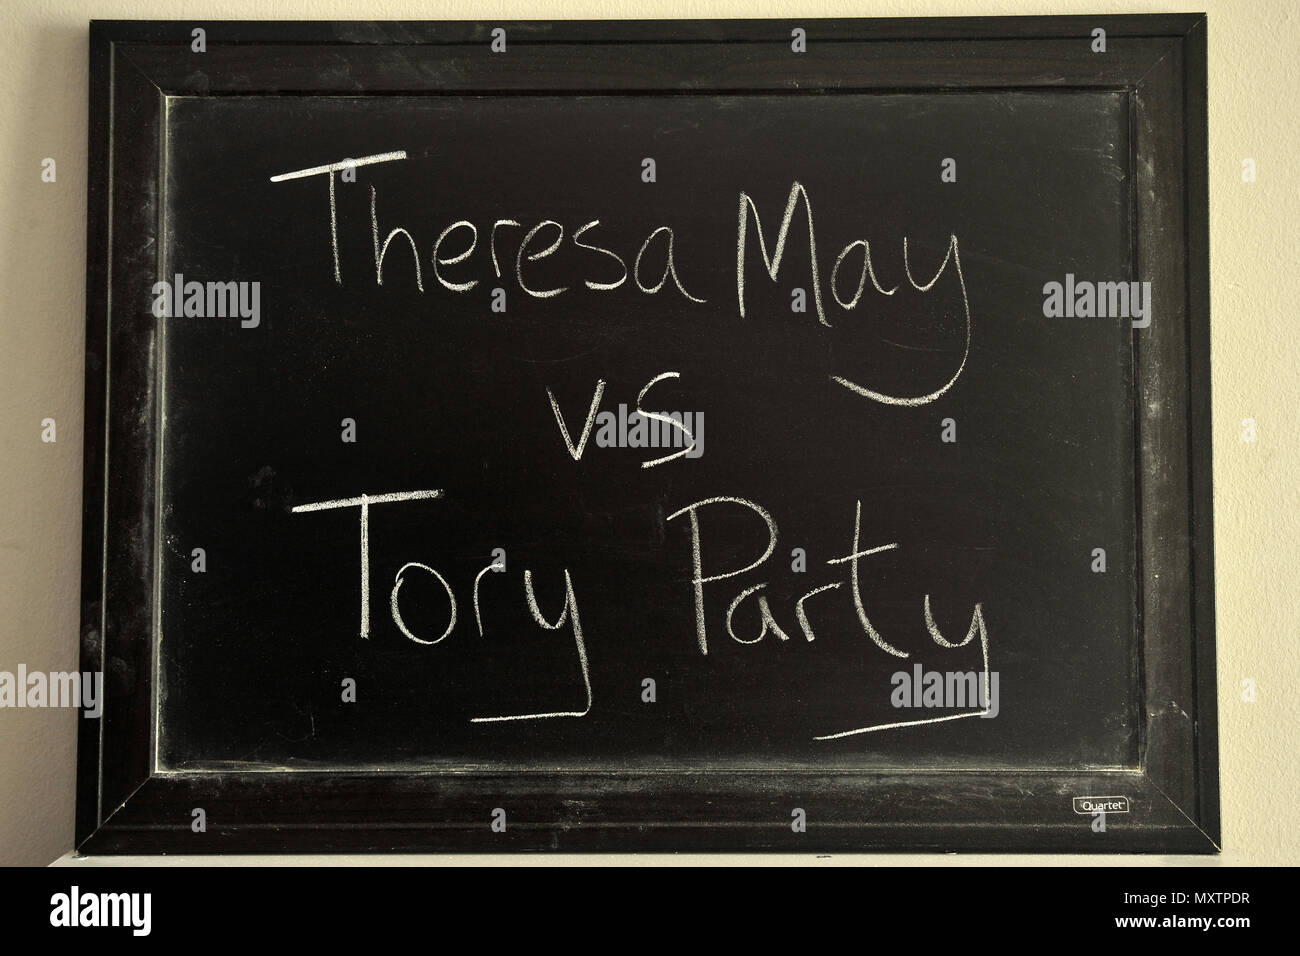 Teresa Mayo vs Partido Tory escritas en blanco tiza en una pizarra. Foto de stock